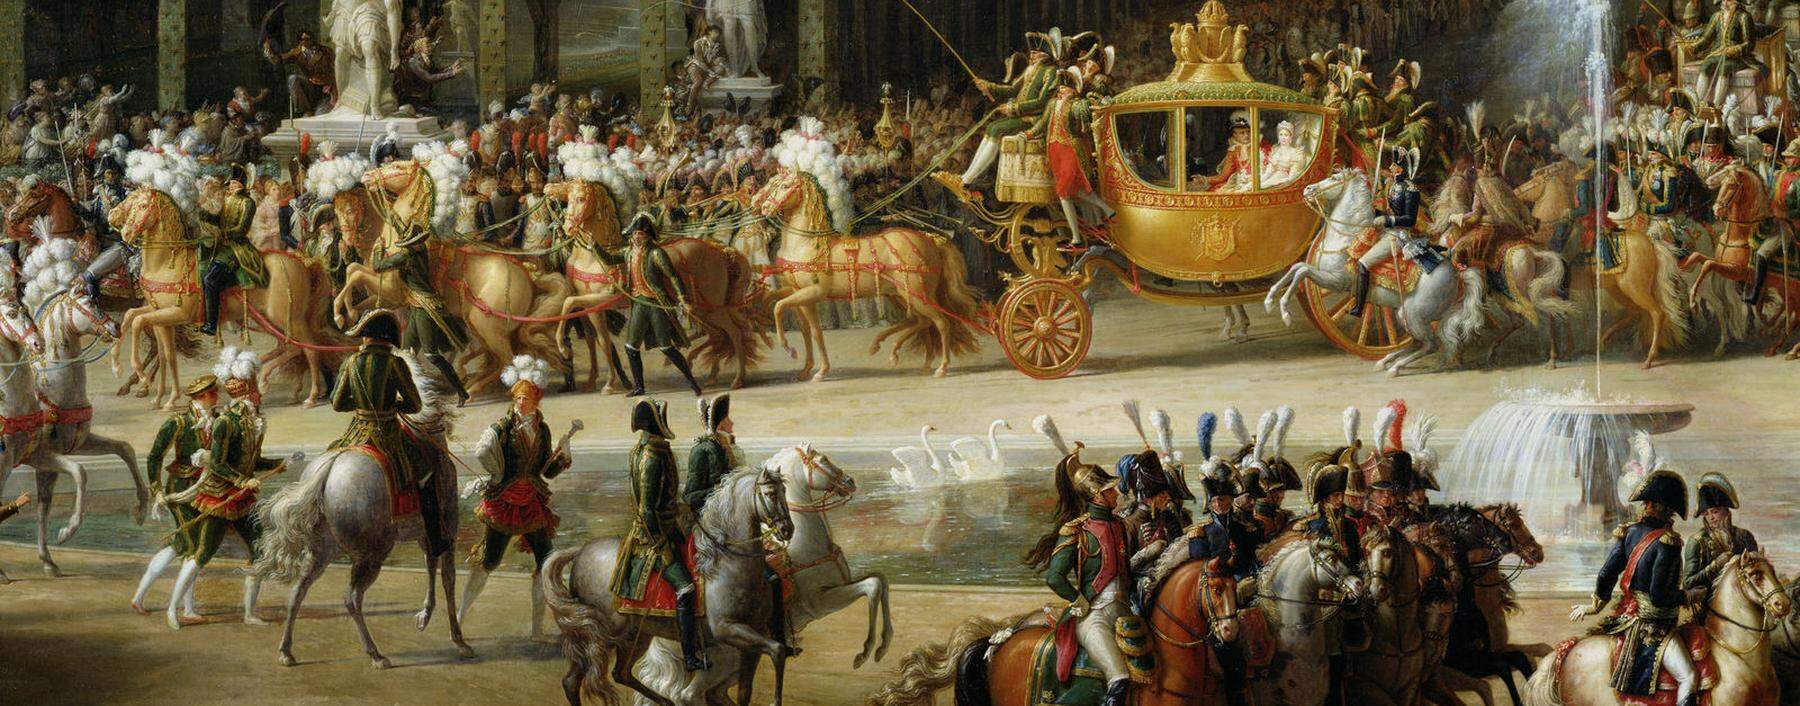 Hochzeitszug in den Tuileriengärten von Paris am 2. April 1810. Der Parvenu Napoleon zeigte seiner neuen Ehefrau aus Österreich, was das französische Kaiserreich zu bieten hatte. 